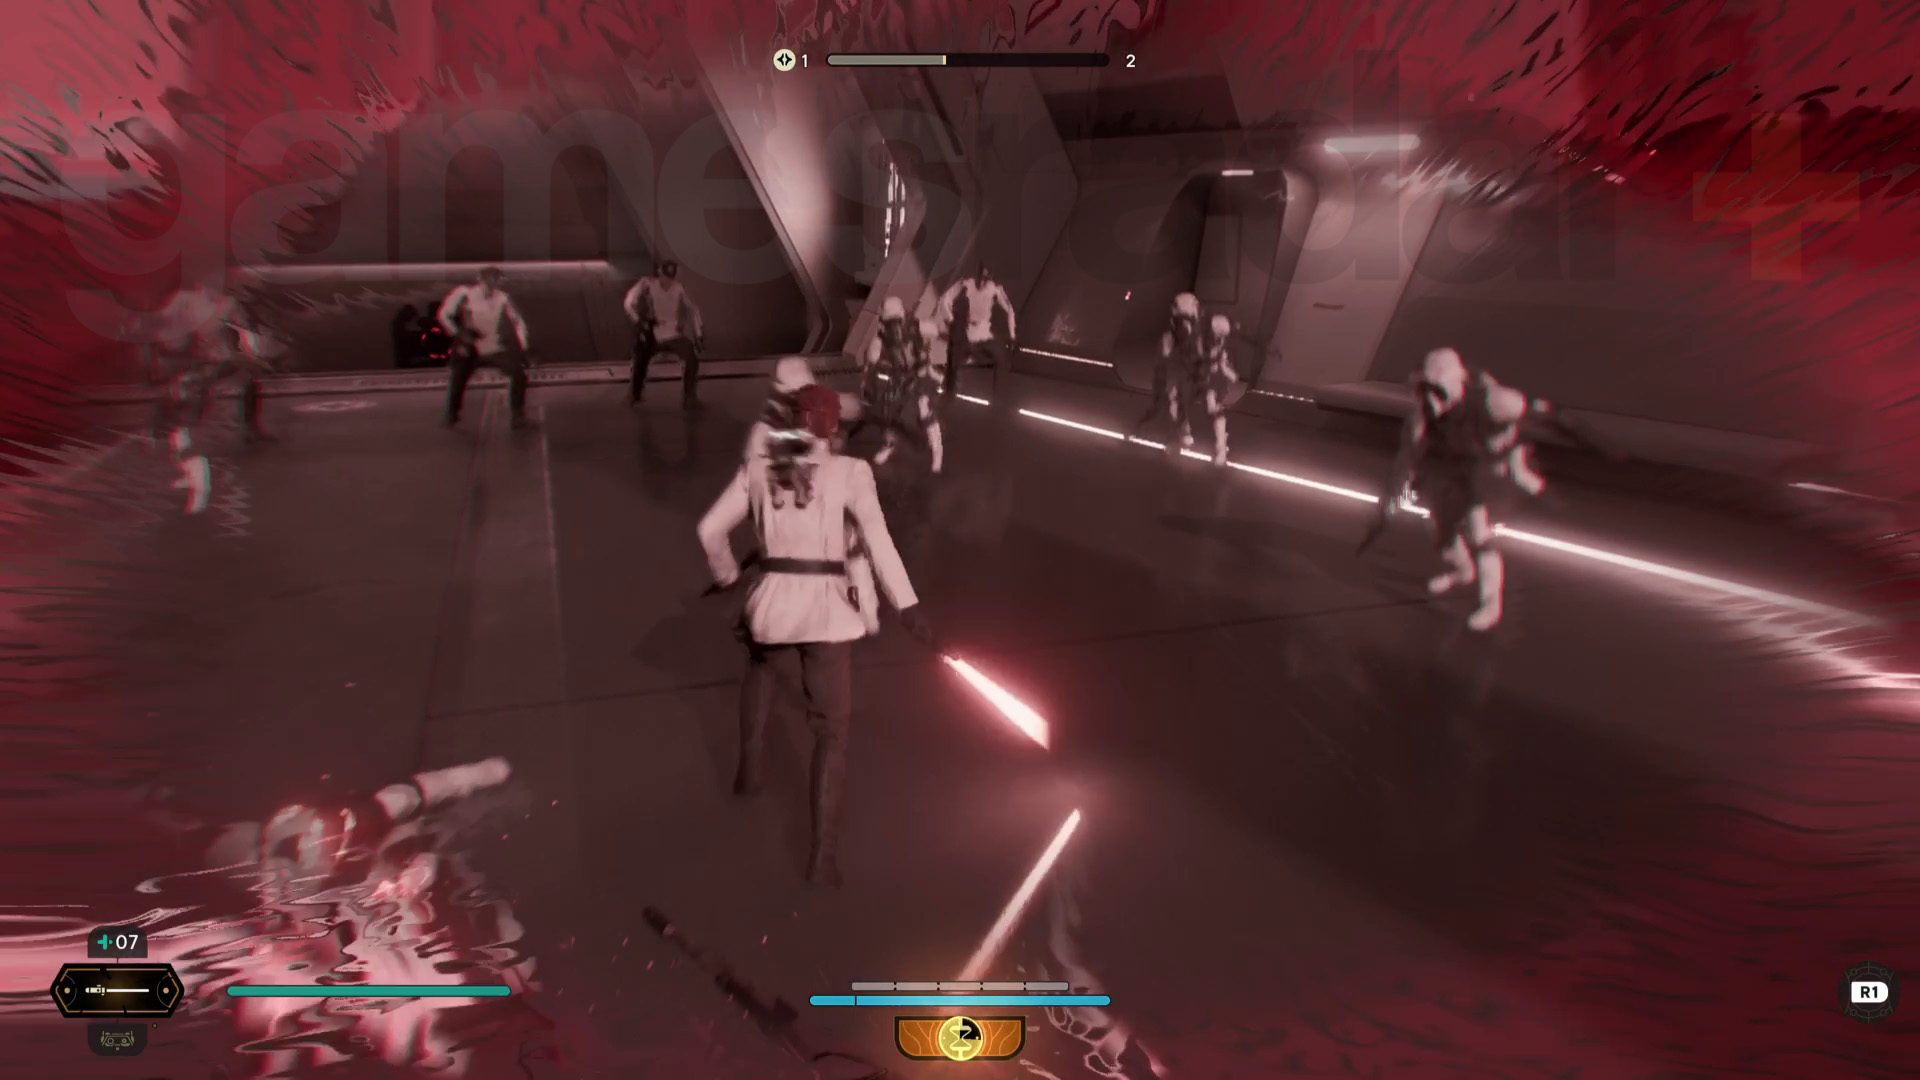 حرب النجوم Jedi الناجية نوفا غارون تجول في كال باستخدام قدرة الغضب على قتل جنود الكشافة ، وتصبغ الشاشة باللون الأحمر